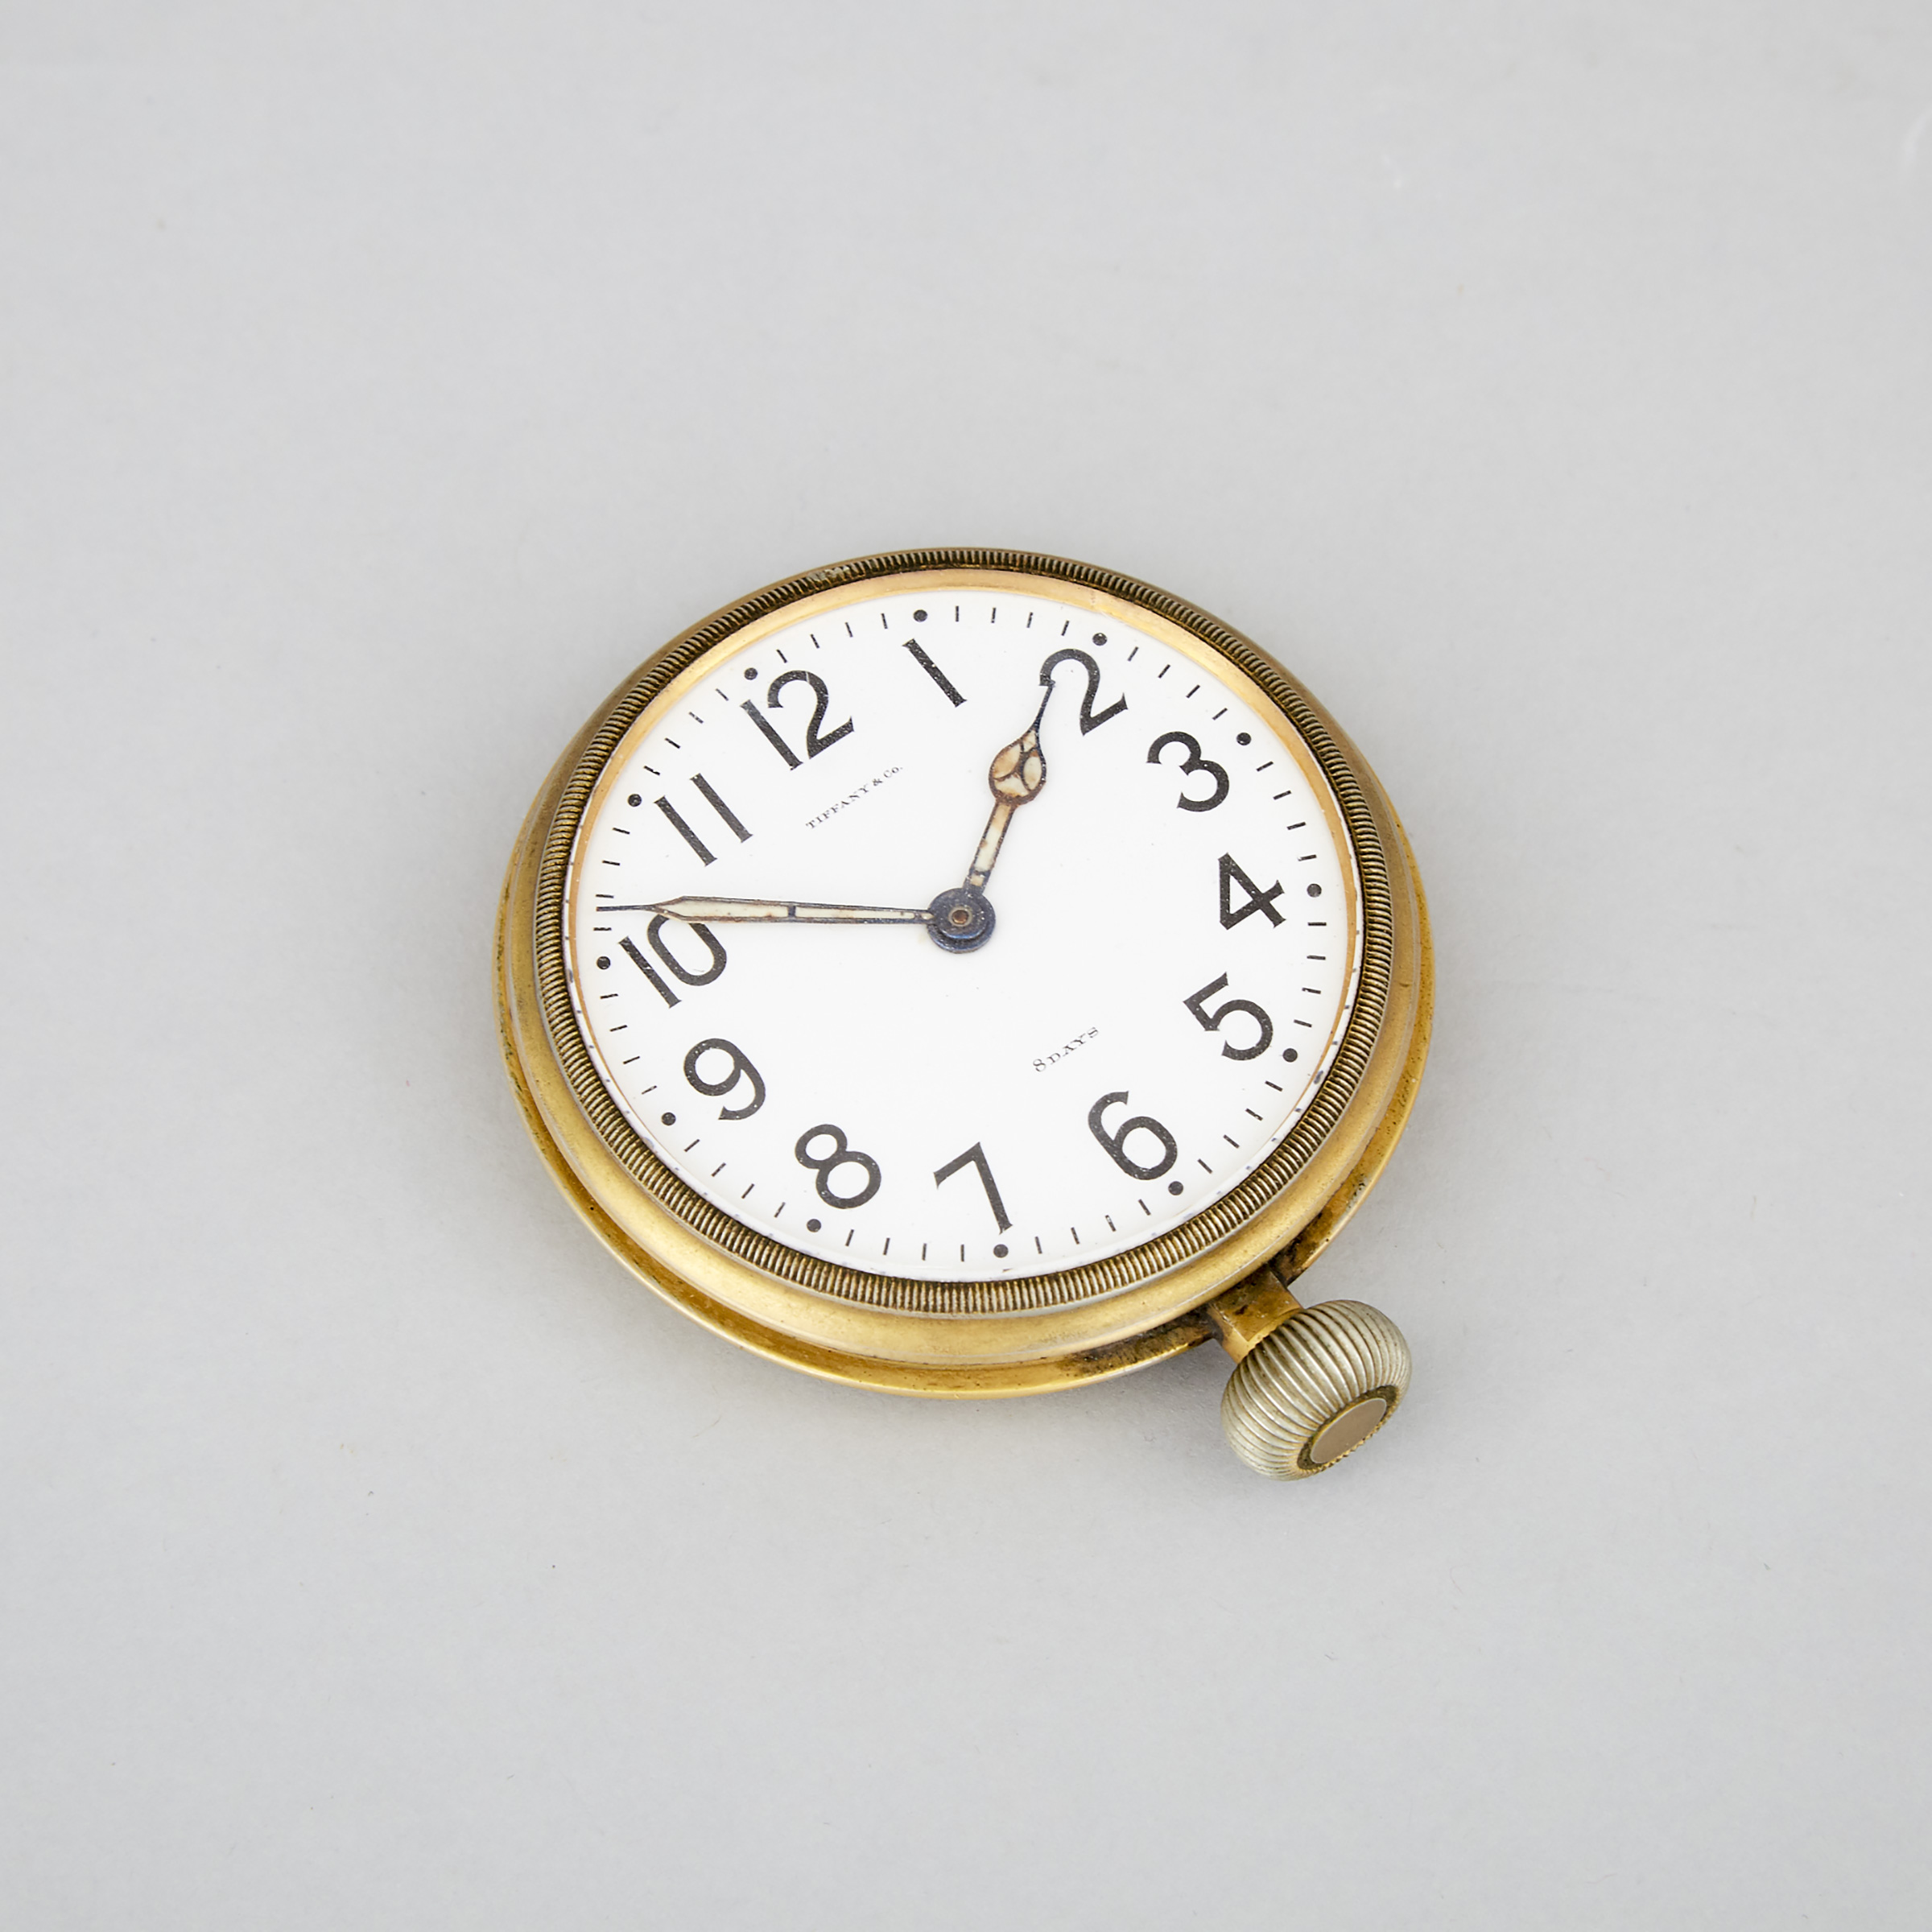 Tiffany & Co. Car Clock by Waltham Watch Co., Waltham, Mass., c.1912